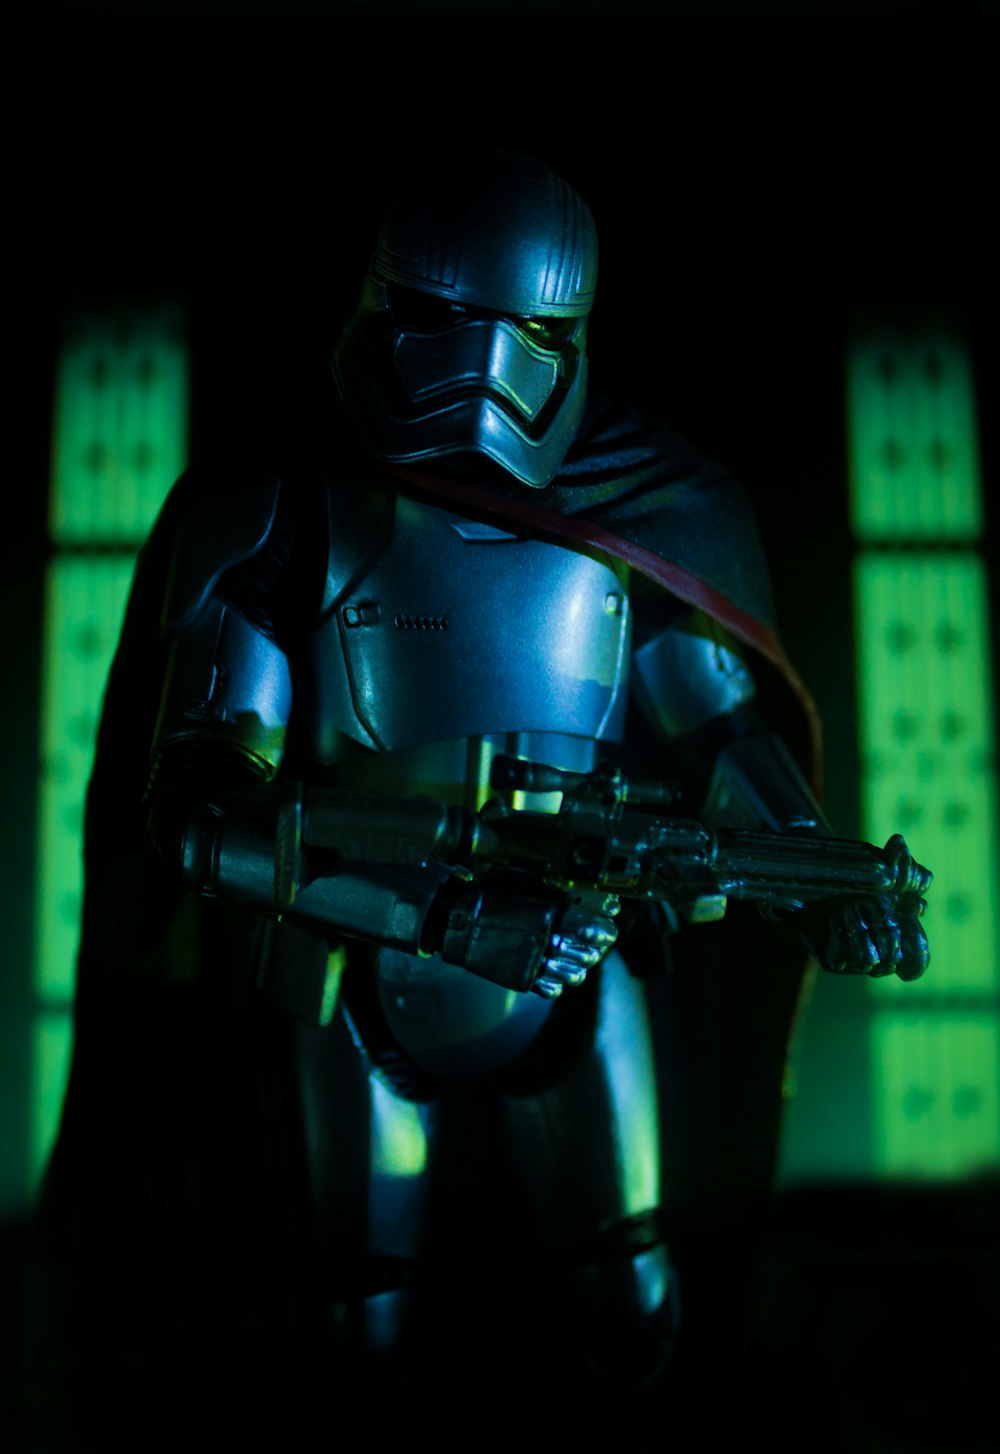 Stormtrooper plastic action figure